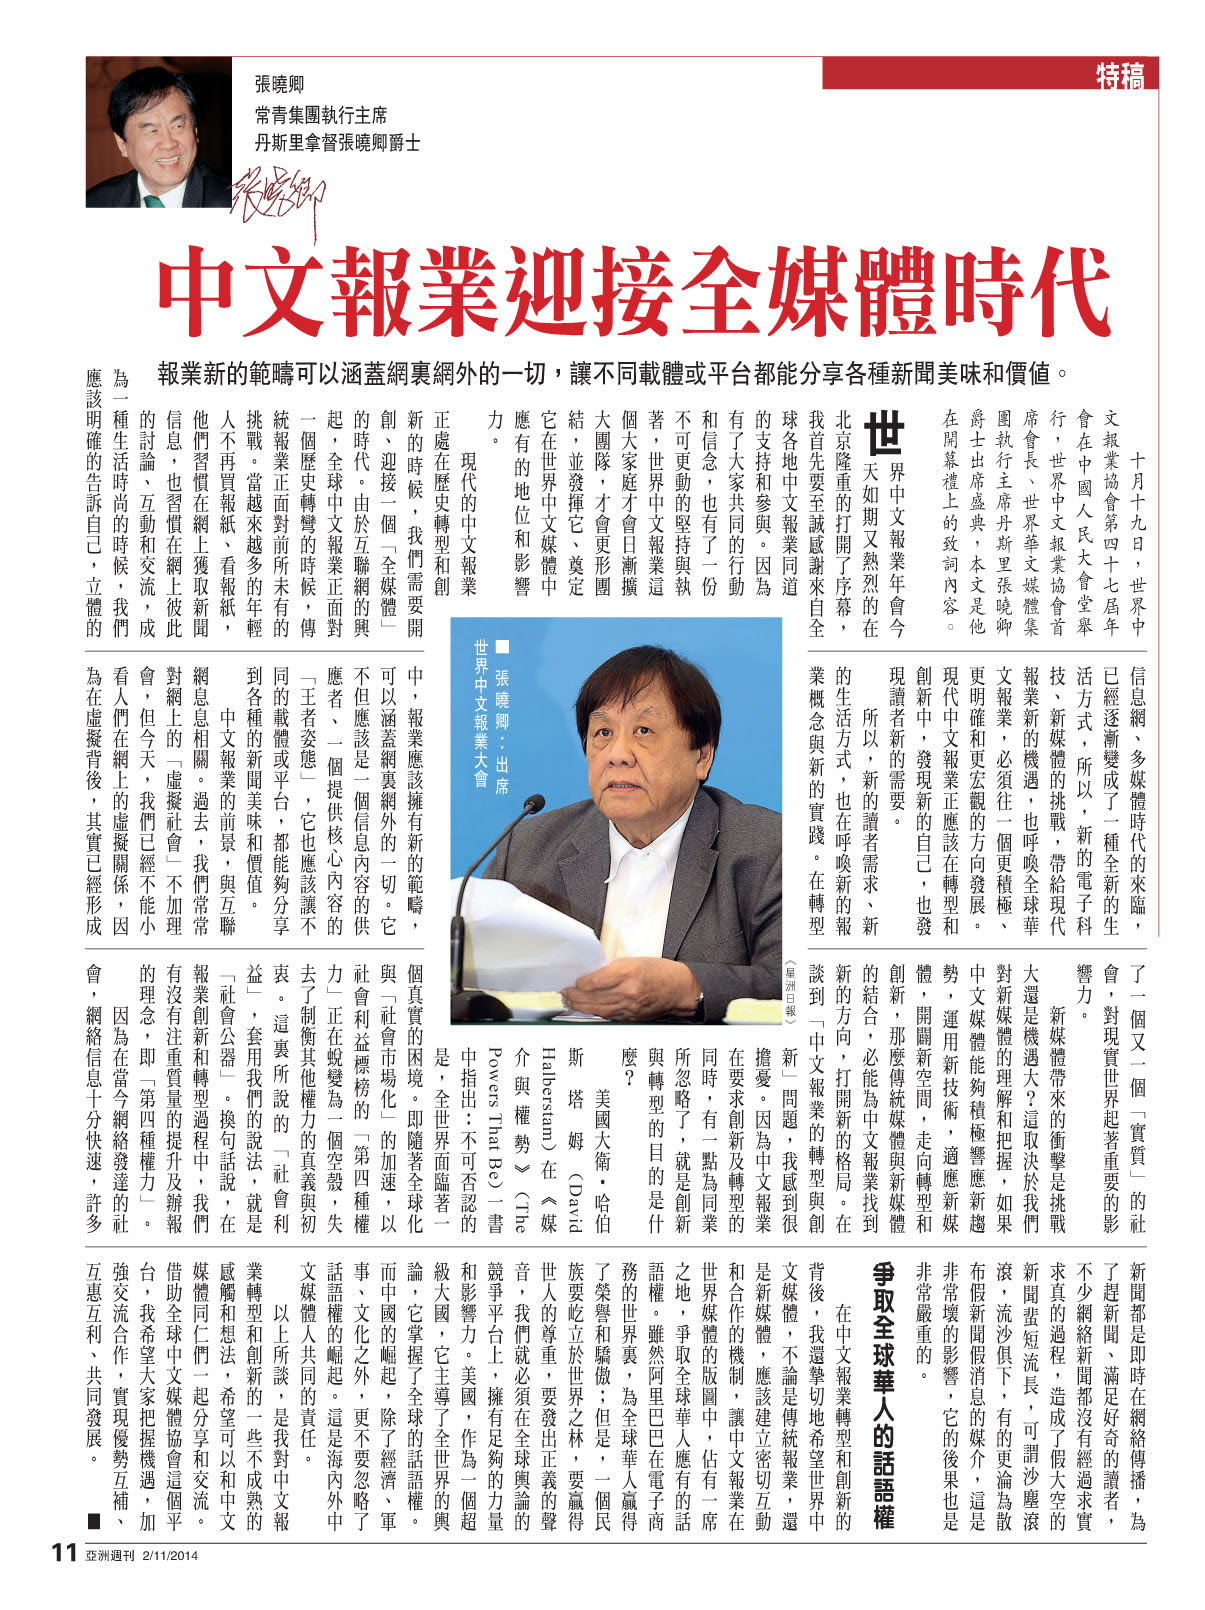 【香港】中文报业迎接全媒体时代